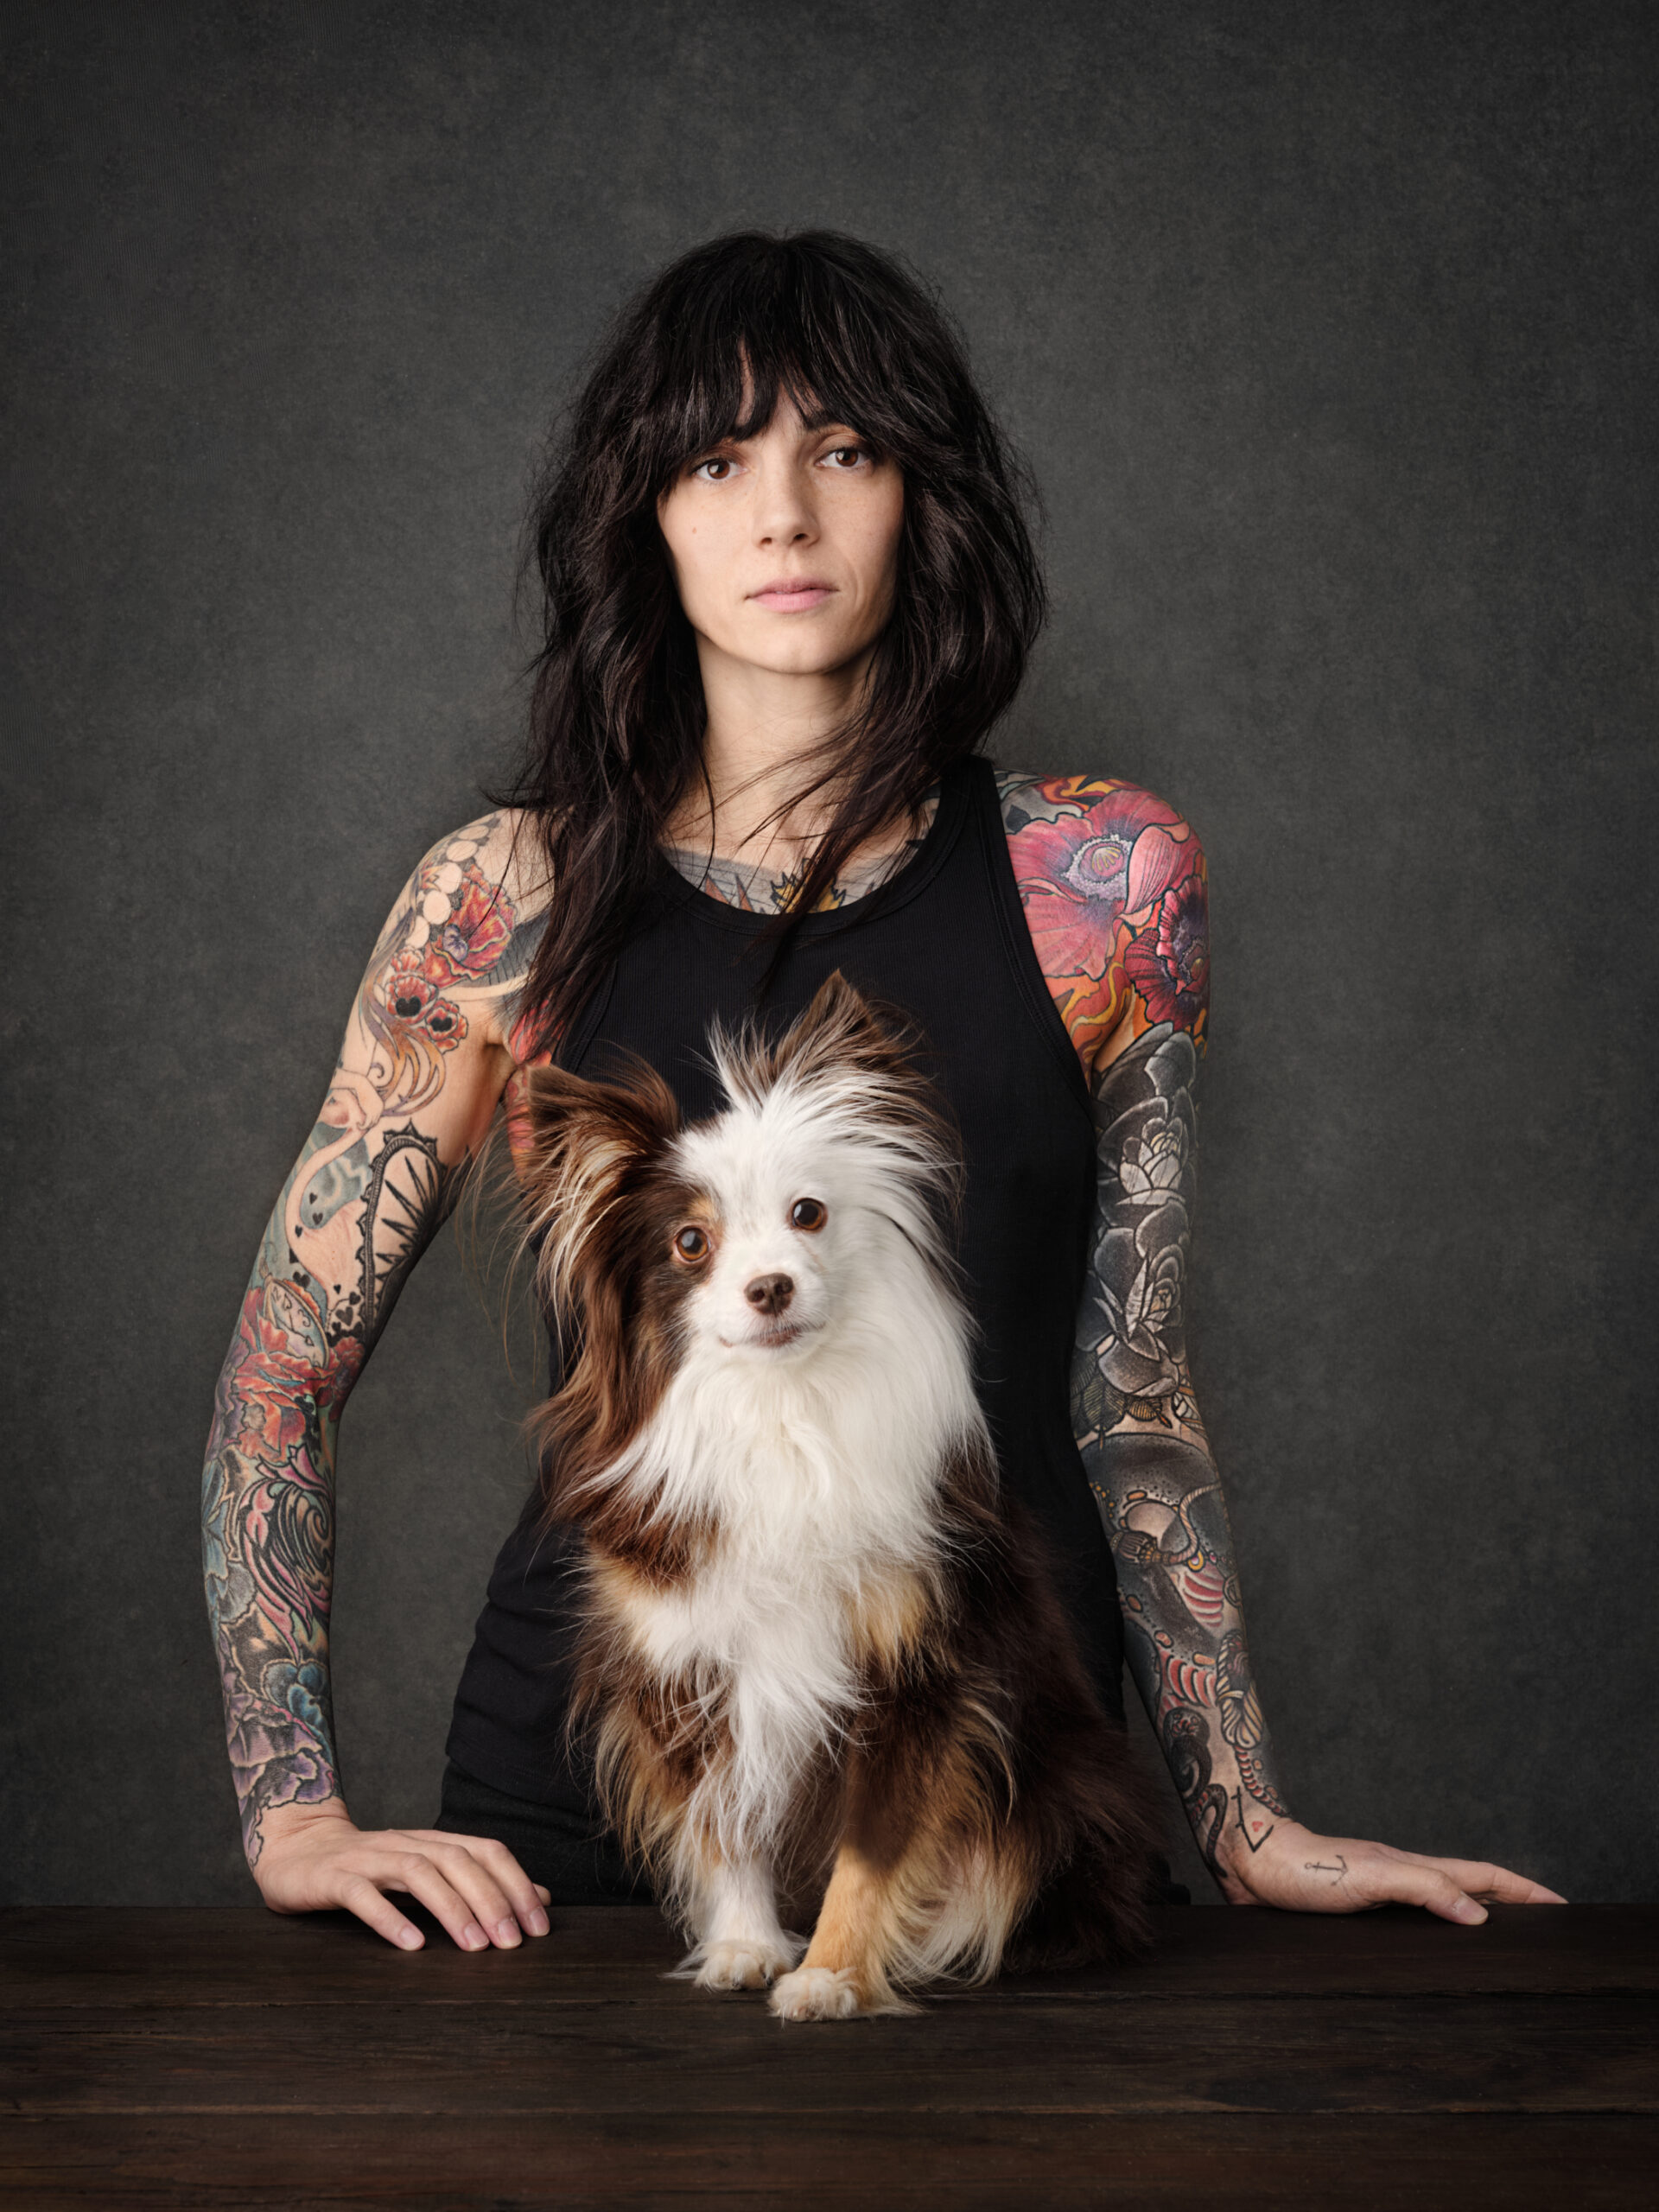 Mulher com cachorro posando em estúdio, foto premiada no Dog photography Award